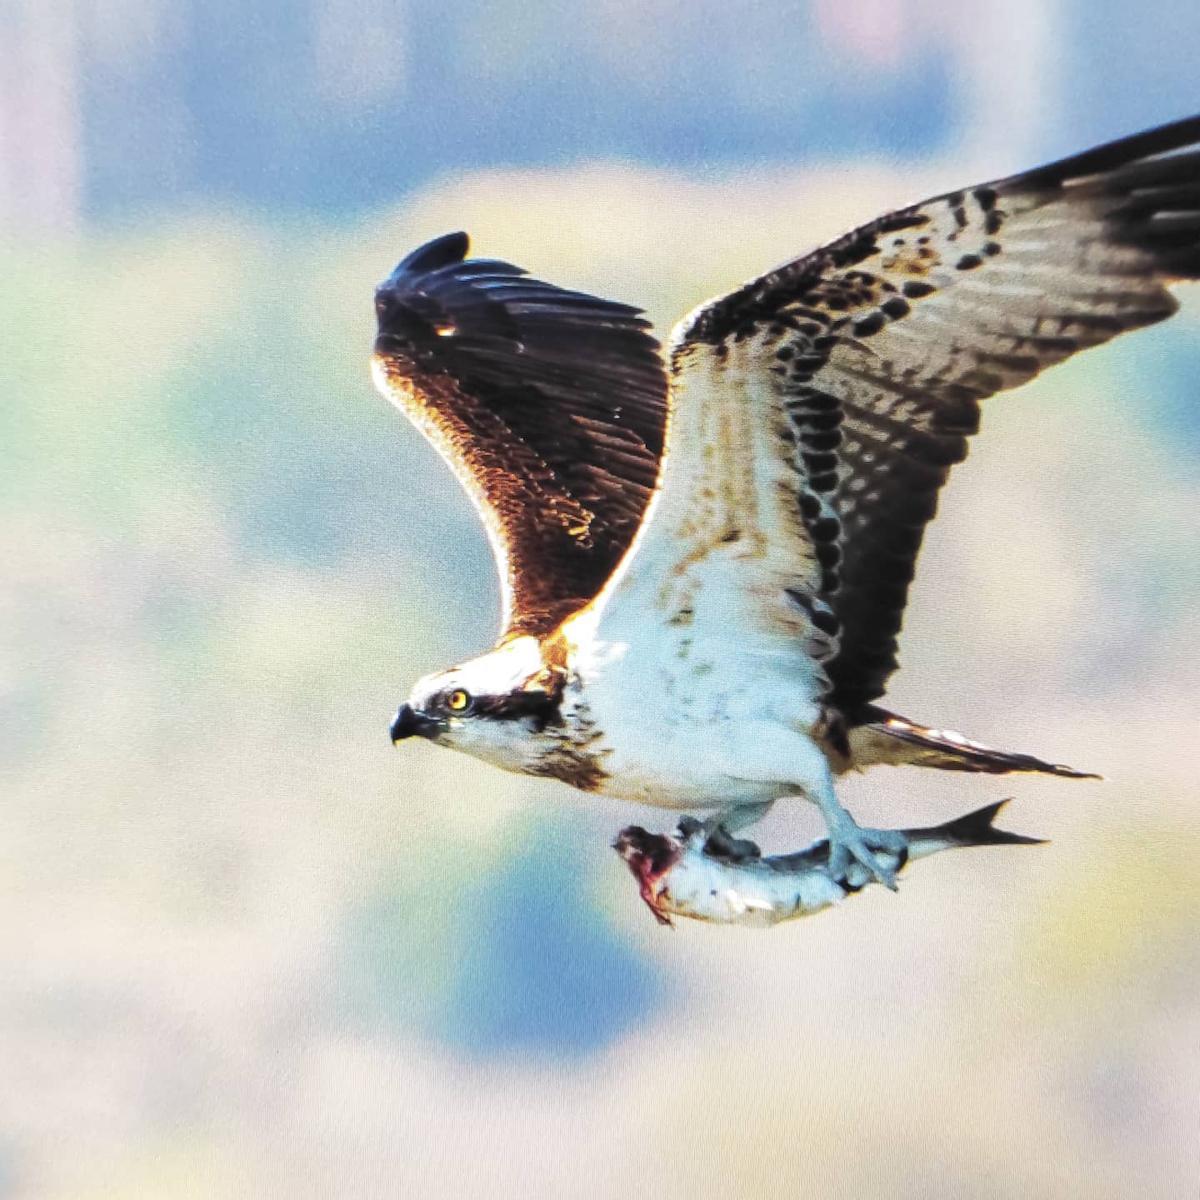 Un águila pescadora en plena cacería.